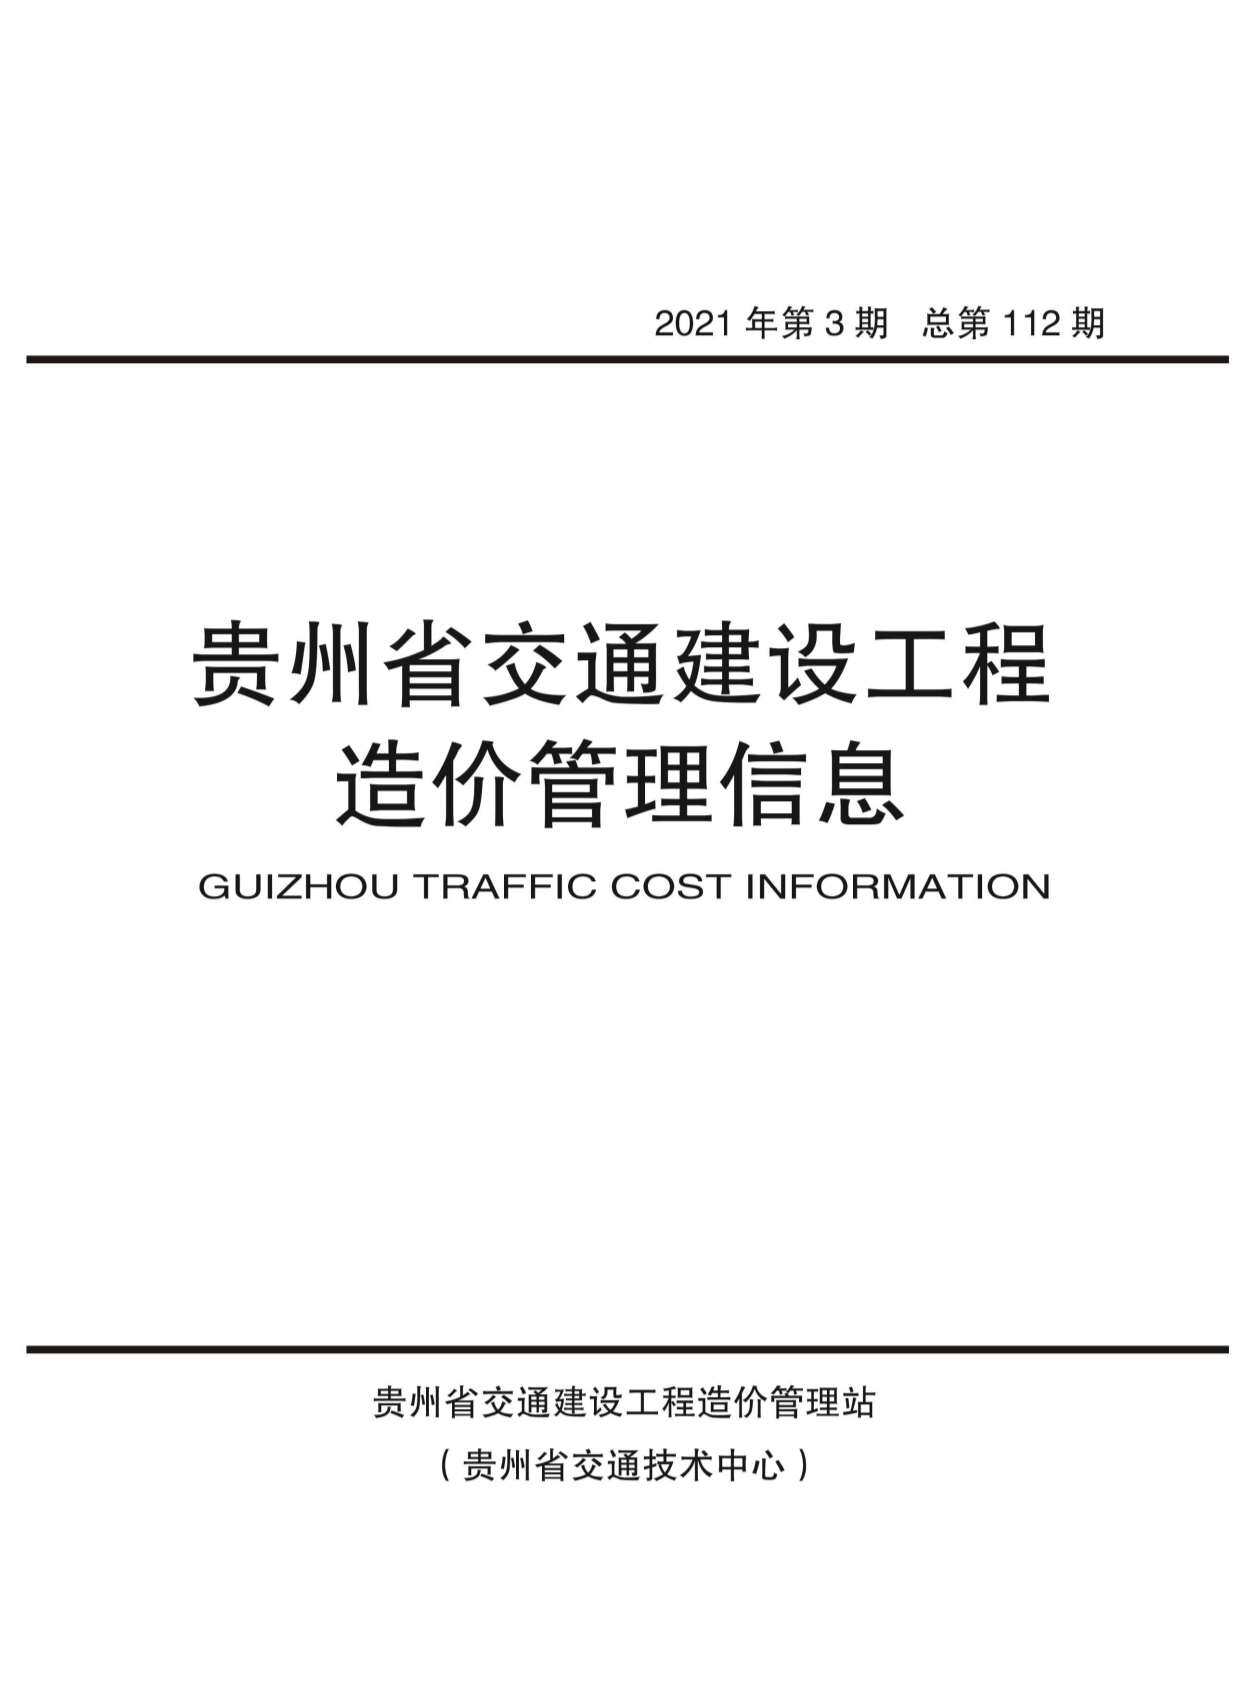 贵州省2021年3月交通工程造价信息期刊